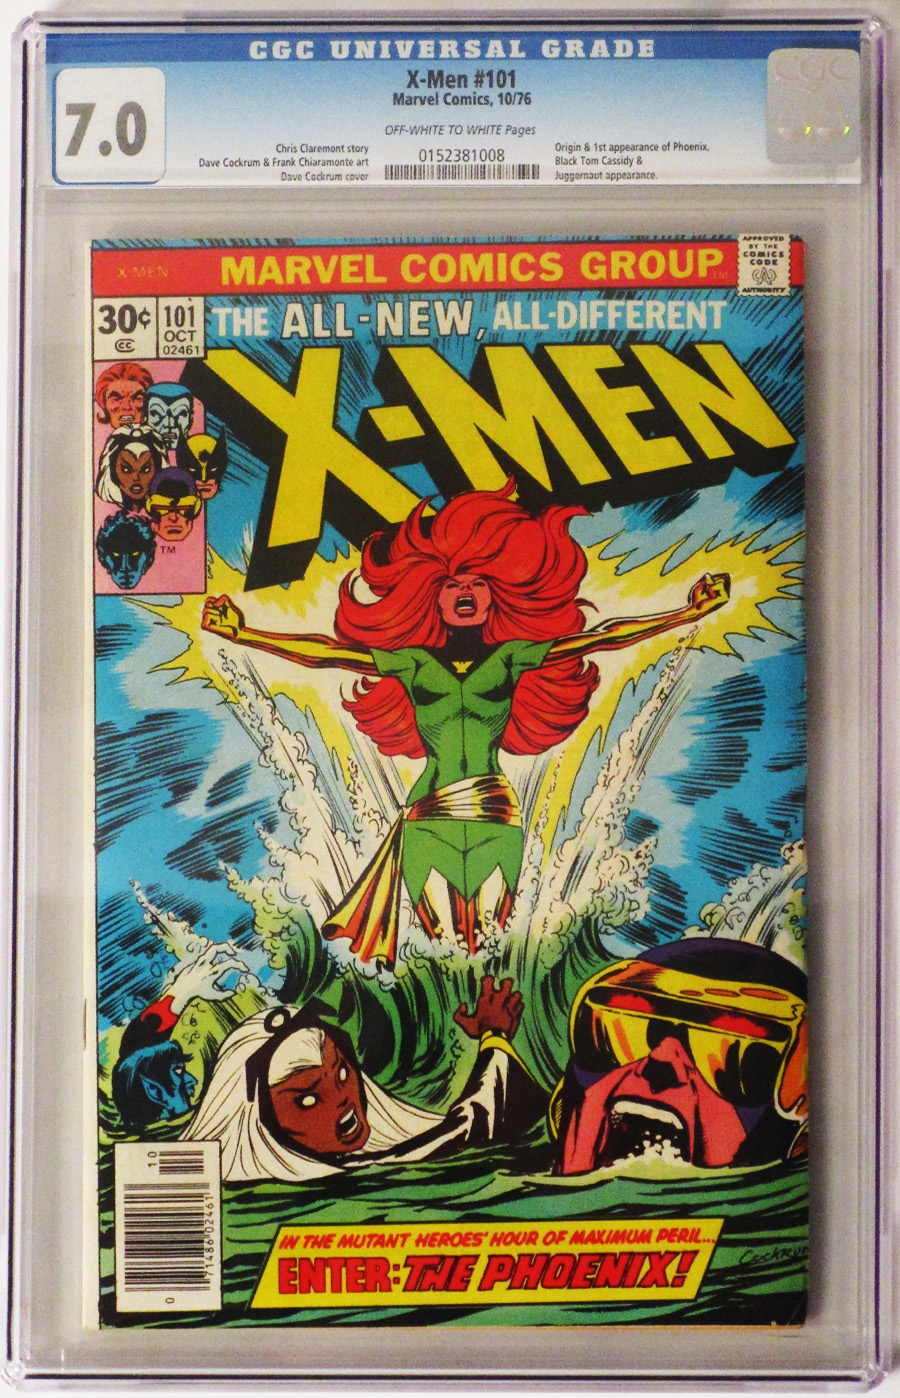 X-Men Vol 1 #101 Cover C CGC 7.0 1st Ptg